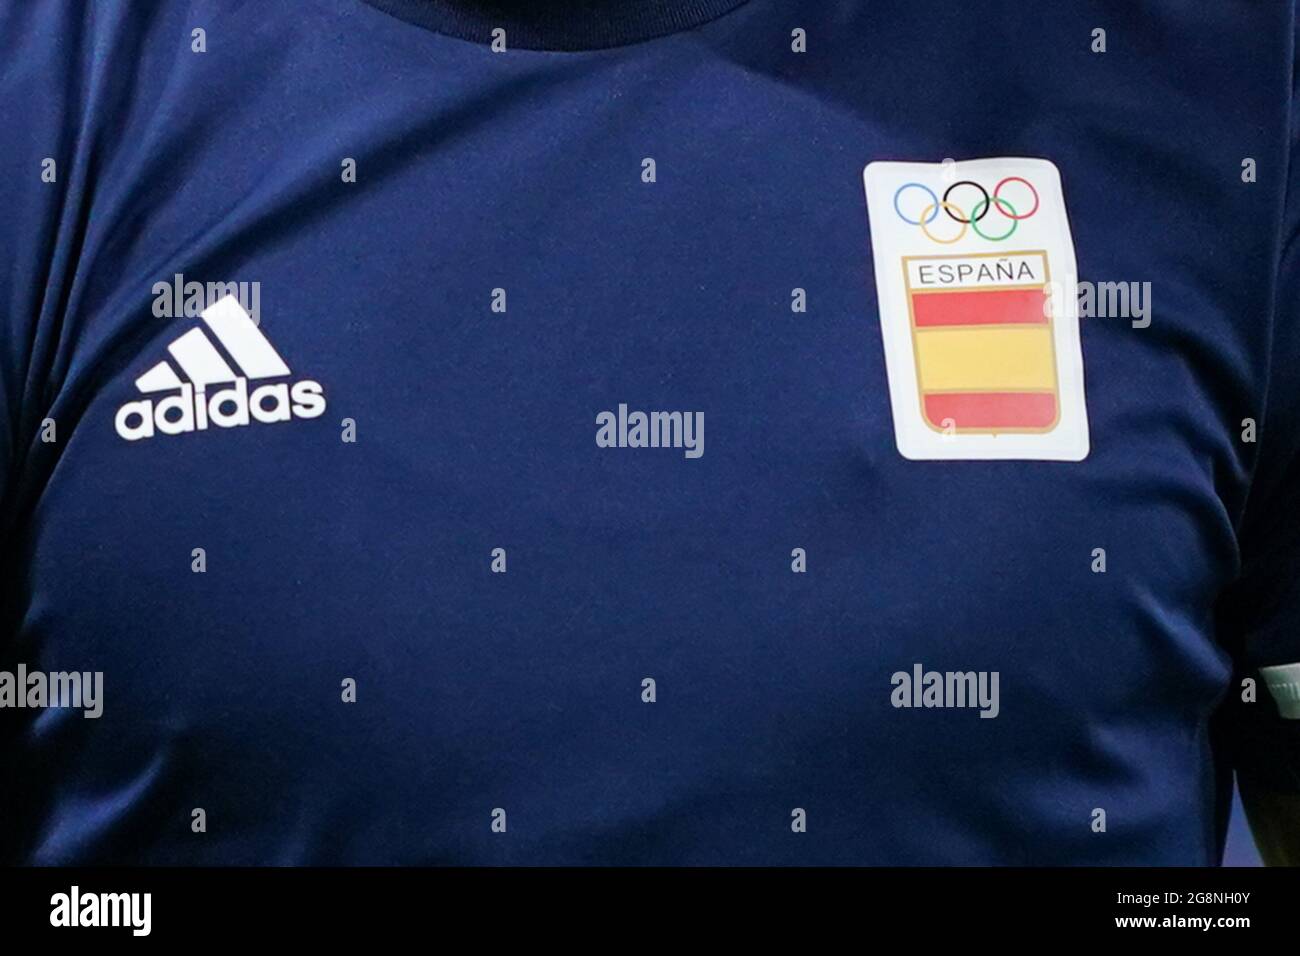 Sapporo, Japón. 22nd de julio de 2021. Camiseta del equipo de España con  logotipo olímpico y su patrocinador Adidas durante el torneo de fútbol  olímpico masculino Tokio 2020 entre Egipto y España